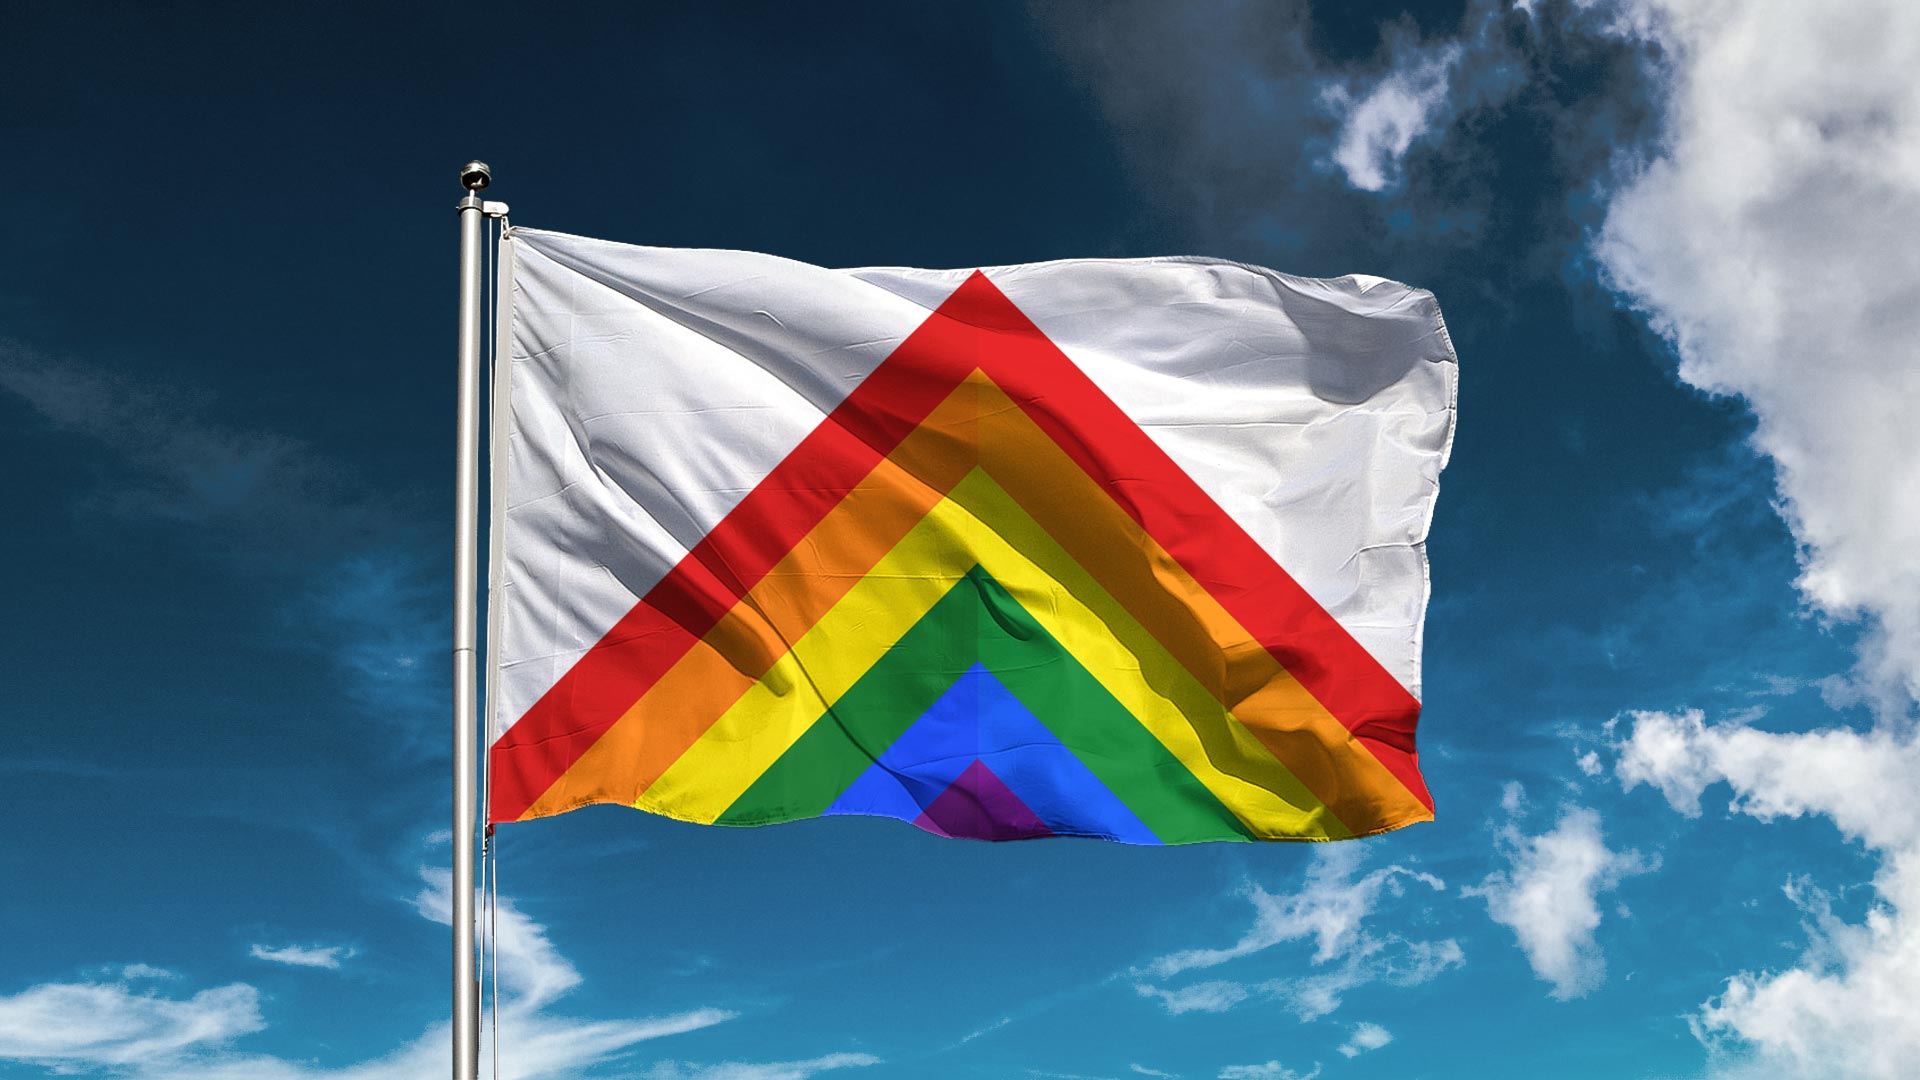 cardiff flag design wales chevron caerdydd pride rainbow lgbt equility